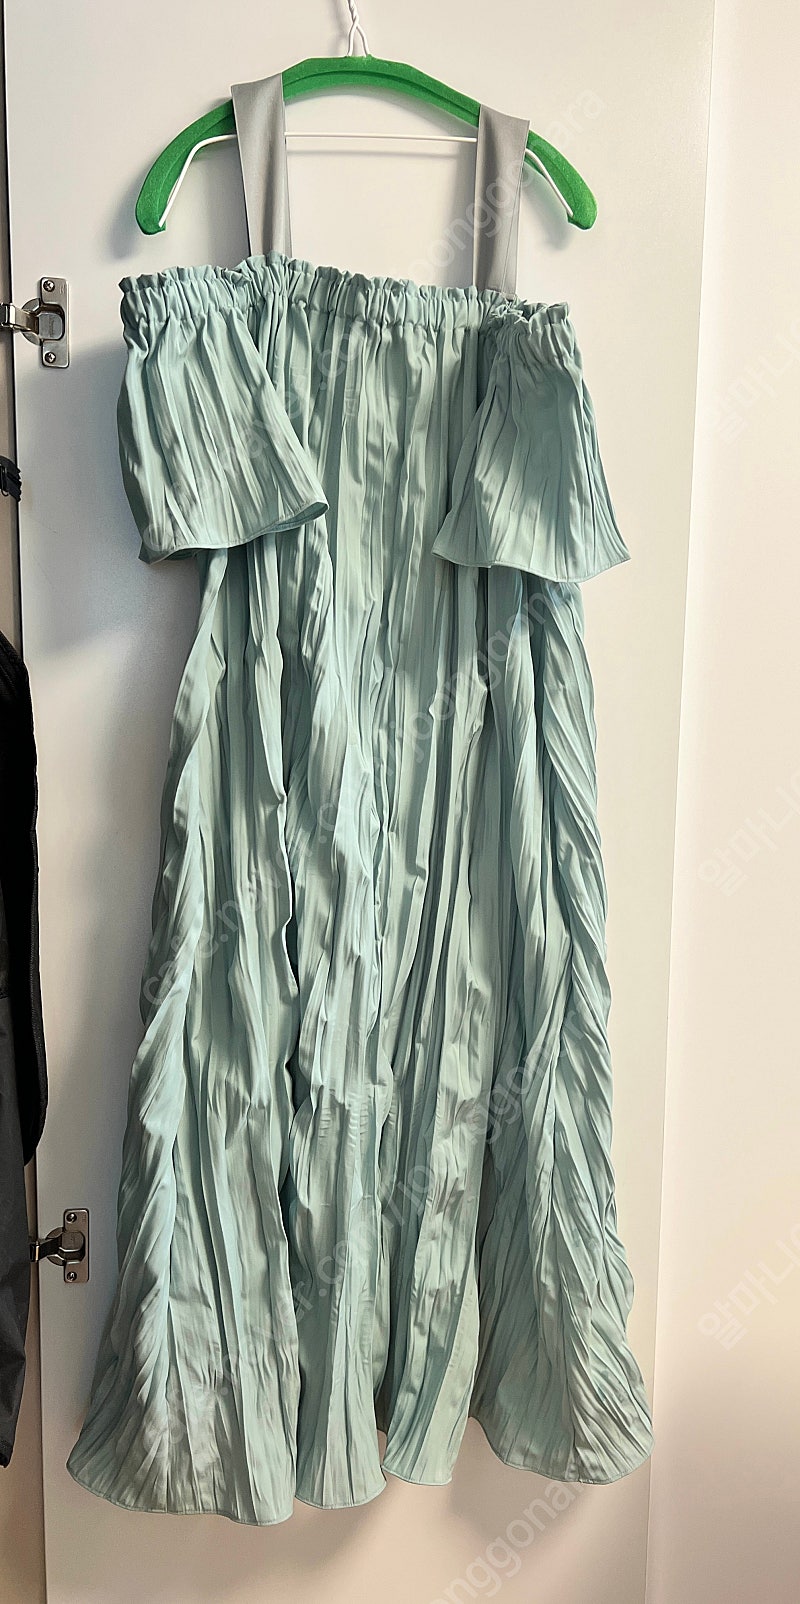 Tina Blossom 썸머플리츠 컬렉션 MI KARA DRESS 민트 카라 원피스 티나블라썸 원피스